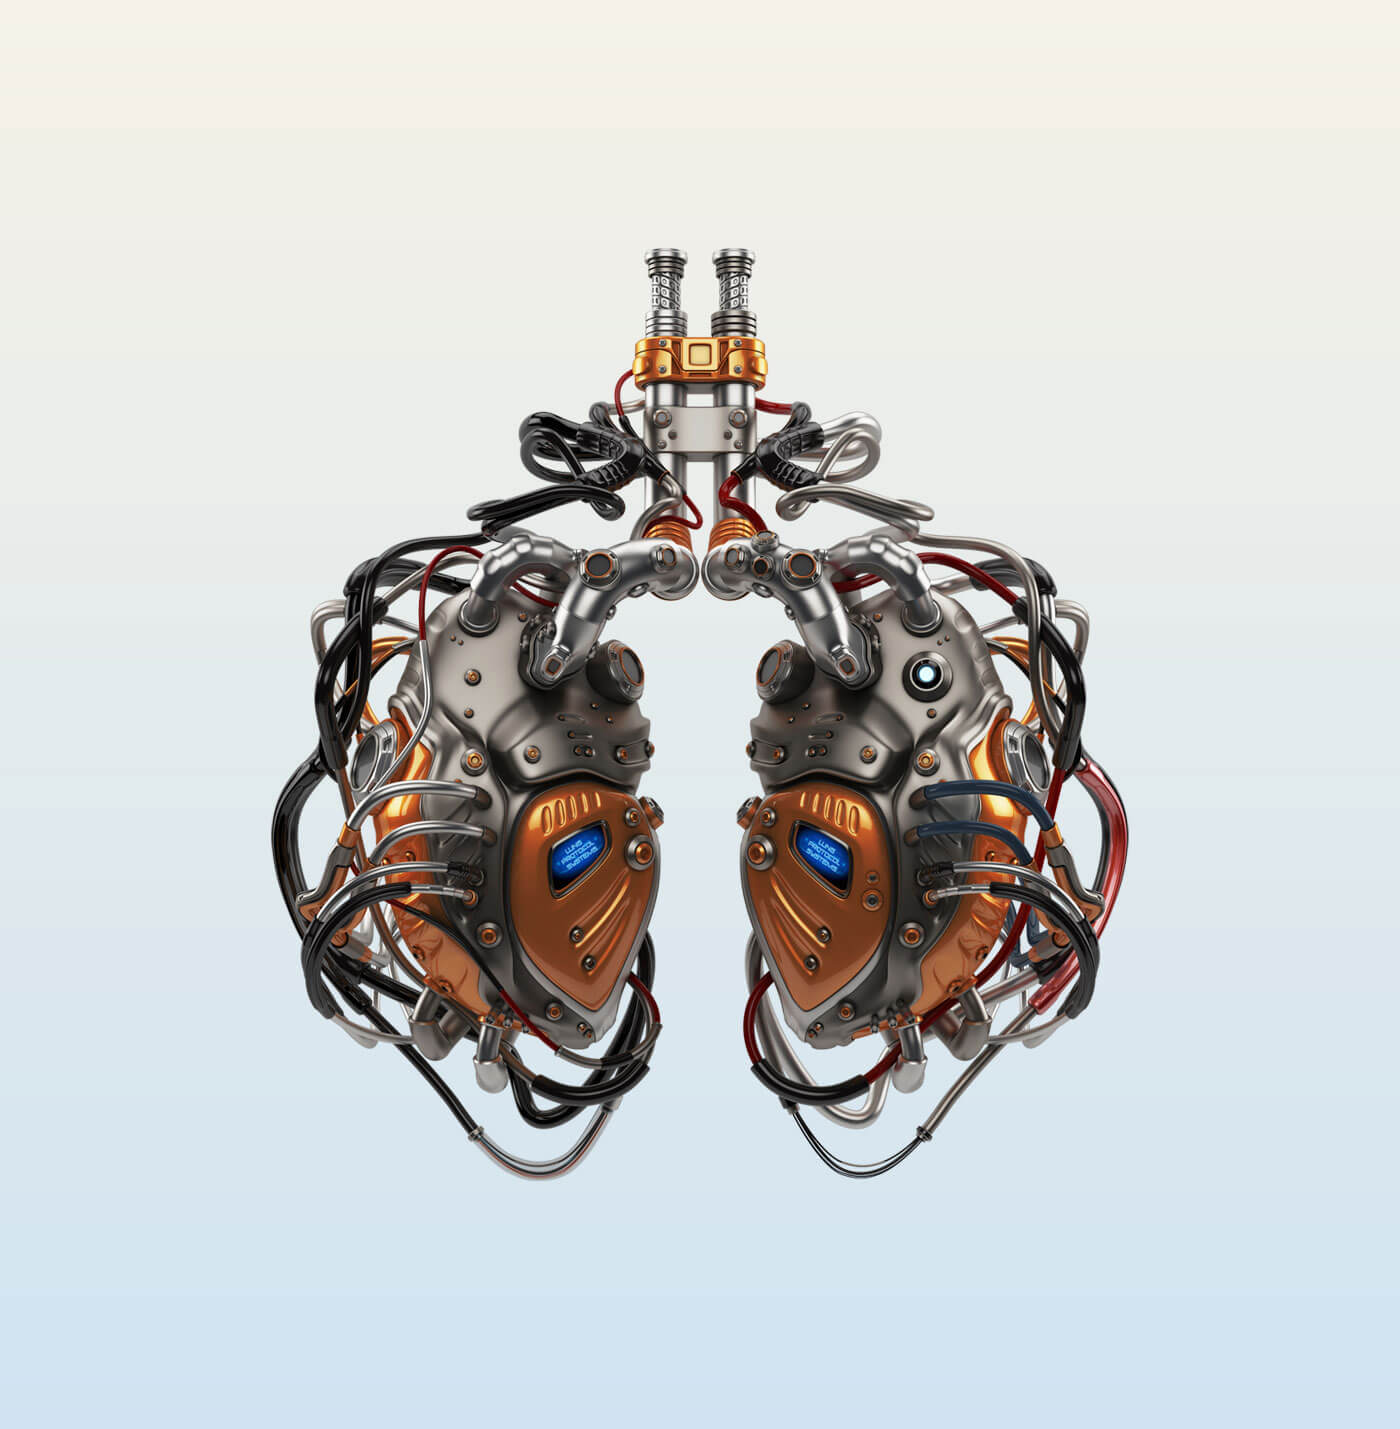 Kunstwerk van twee zogenaamde longen gemaakt van elektronica